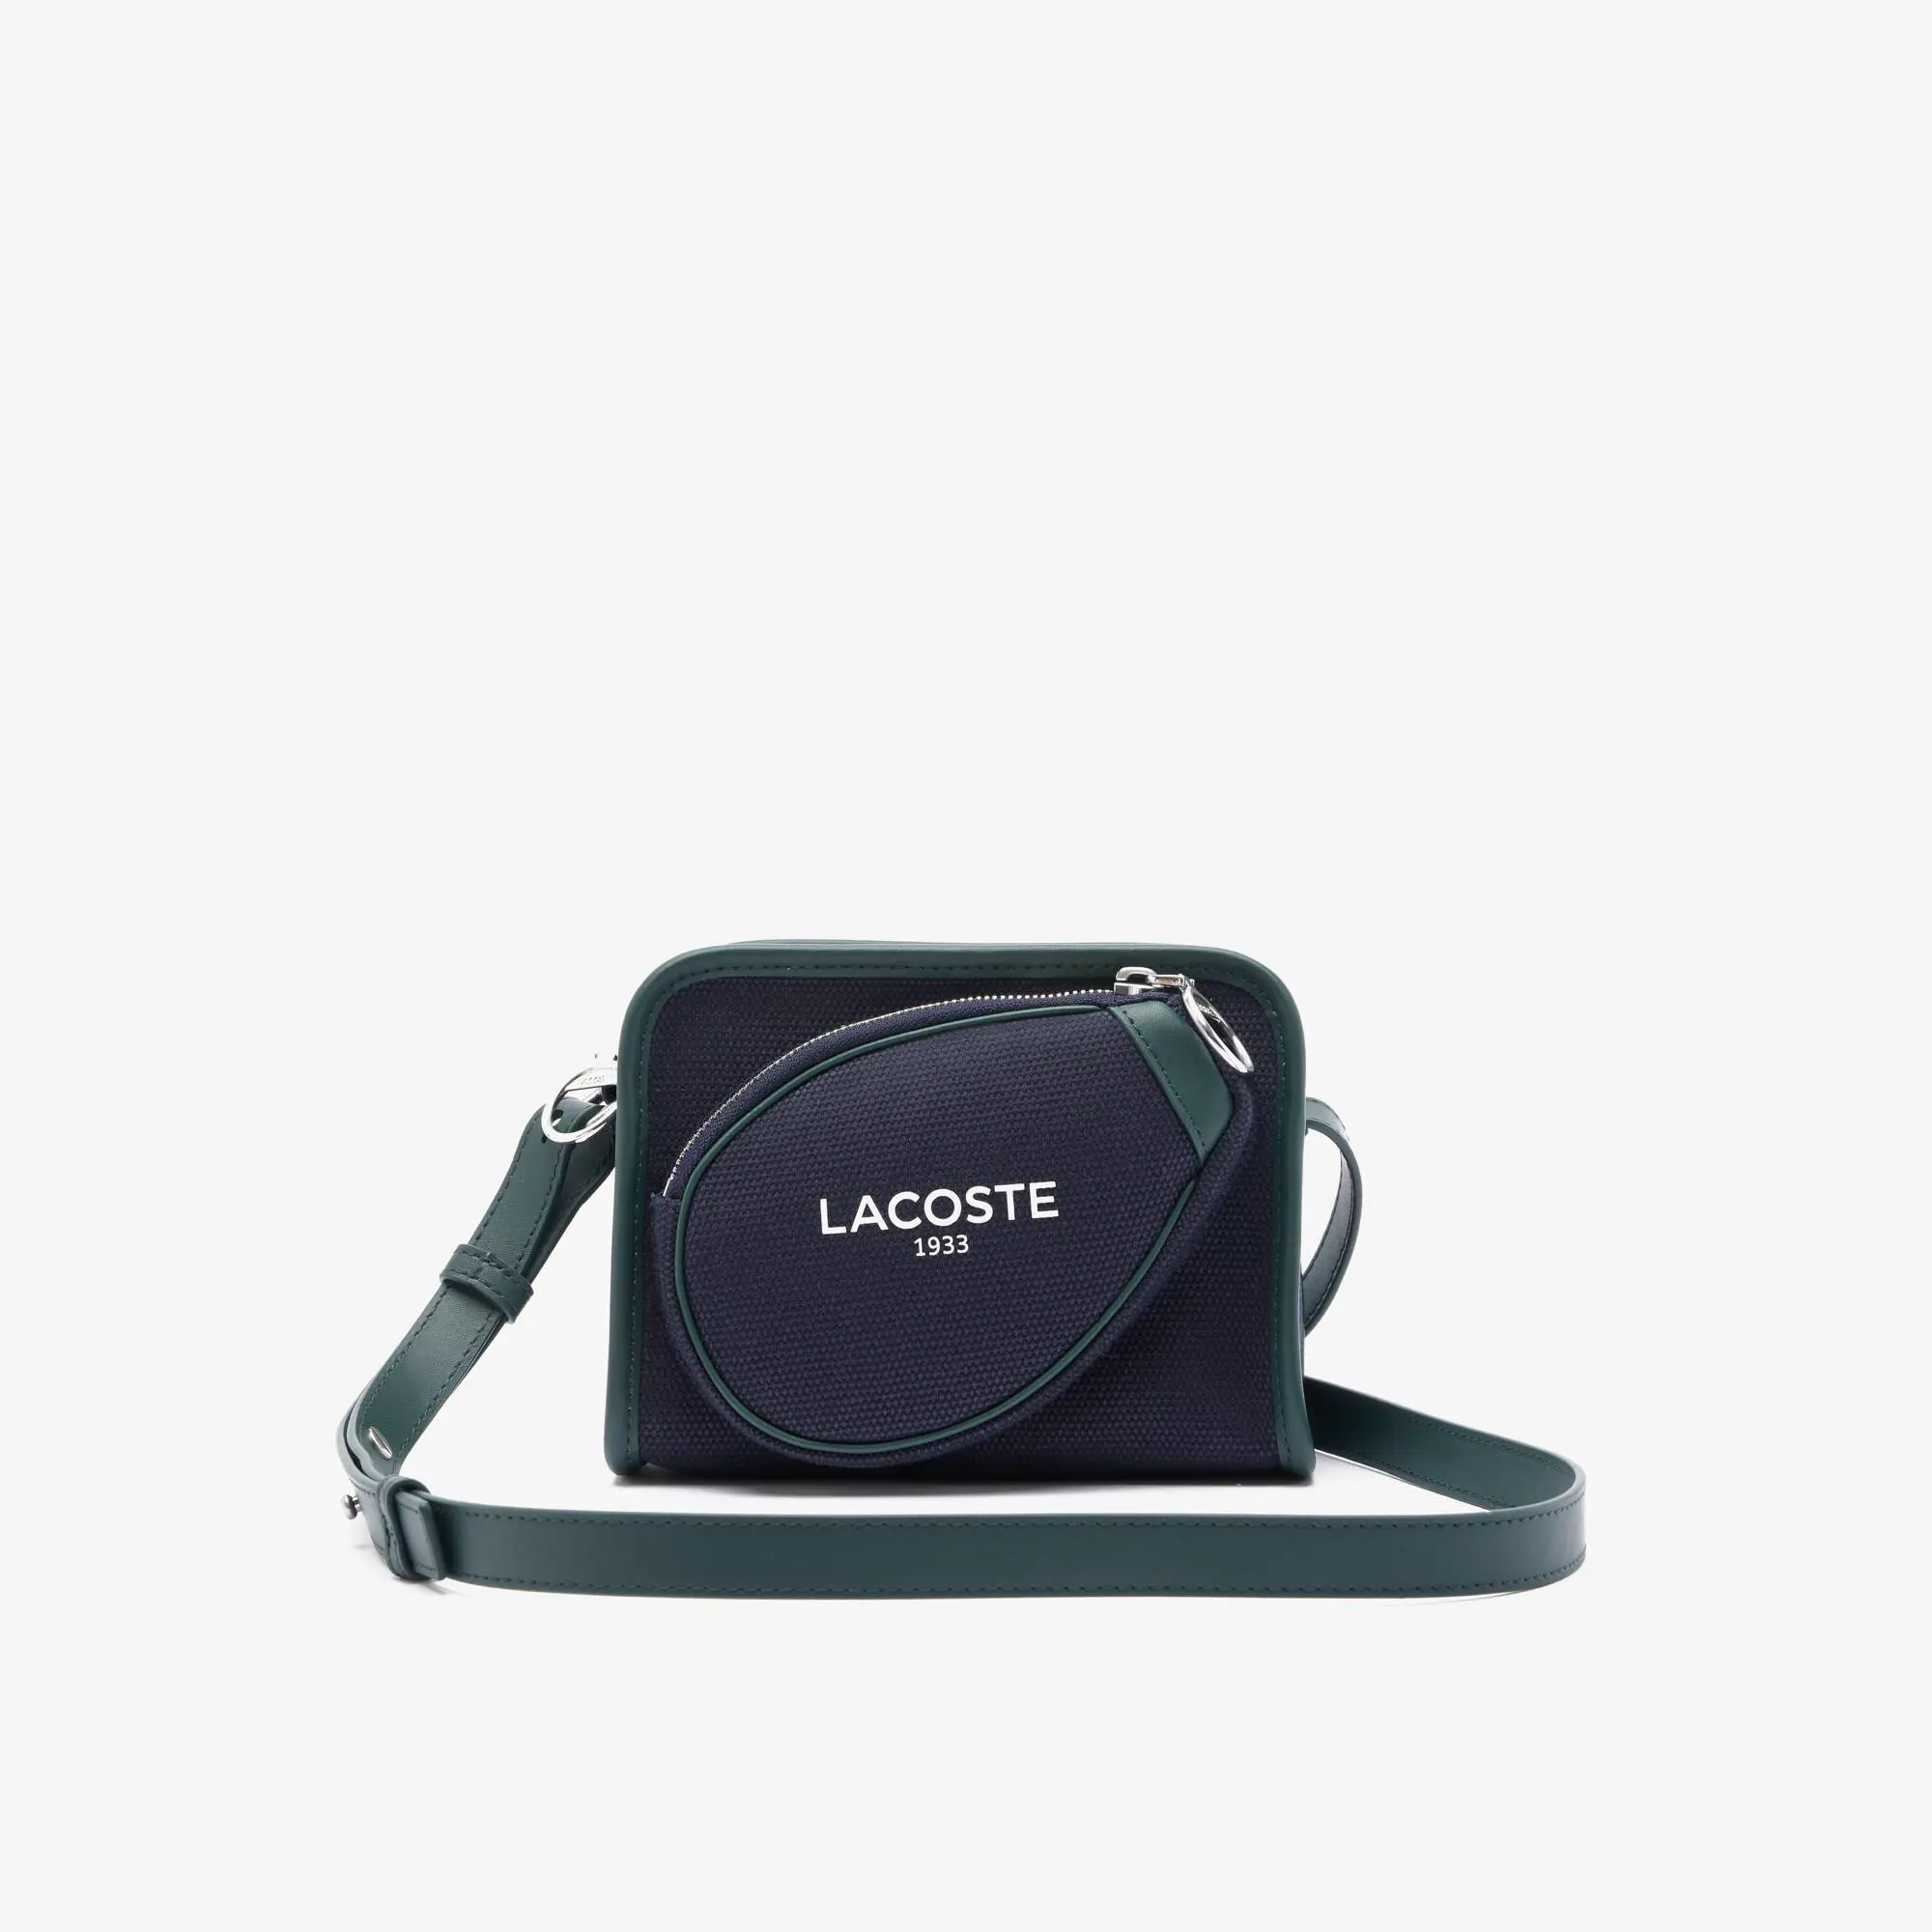 Lacoste Tennis Style Textile Shoulder Bag. 1